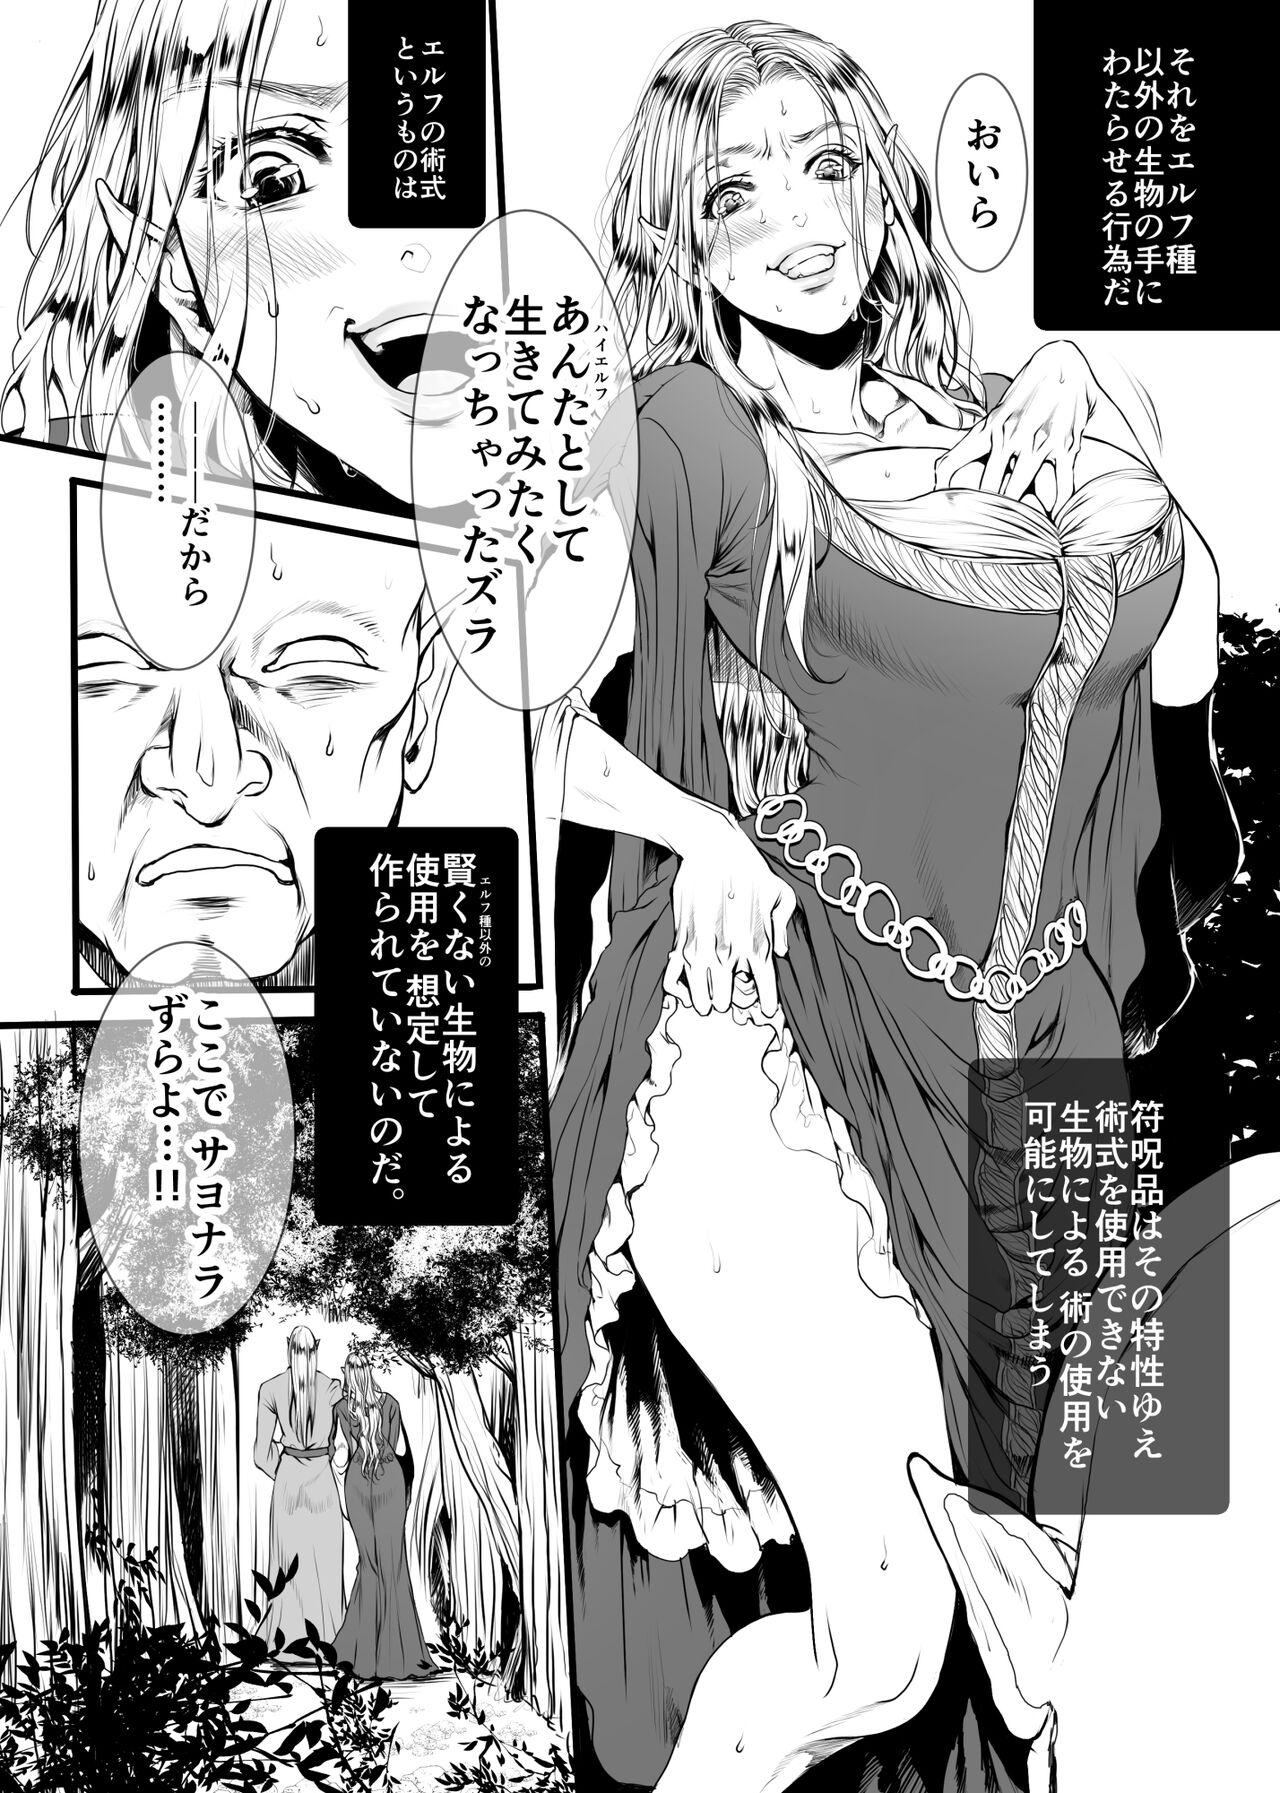 Free Blow Job Porn Kansei wo Akiramta TSF Manga Newbie - Page 5